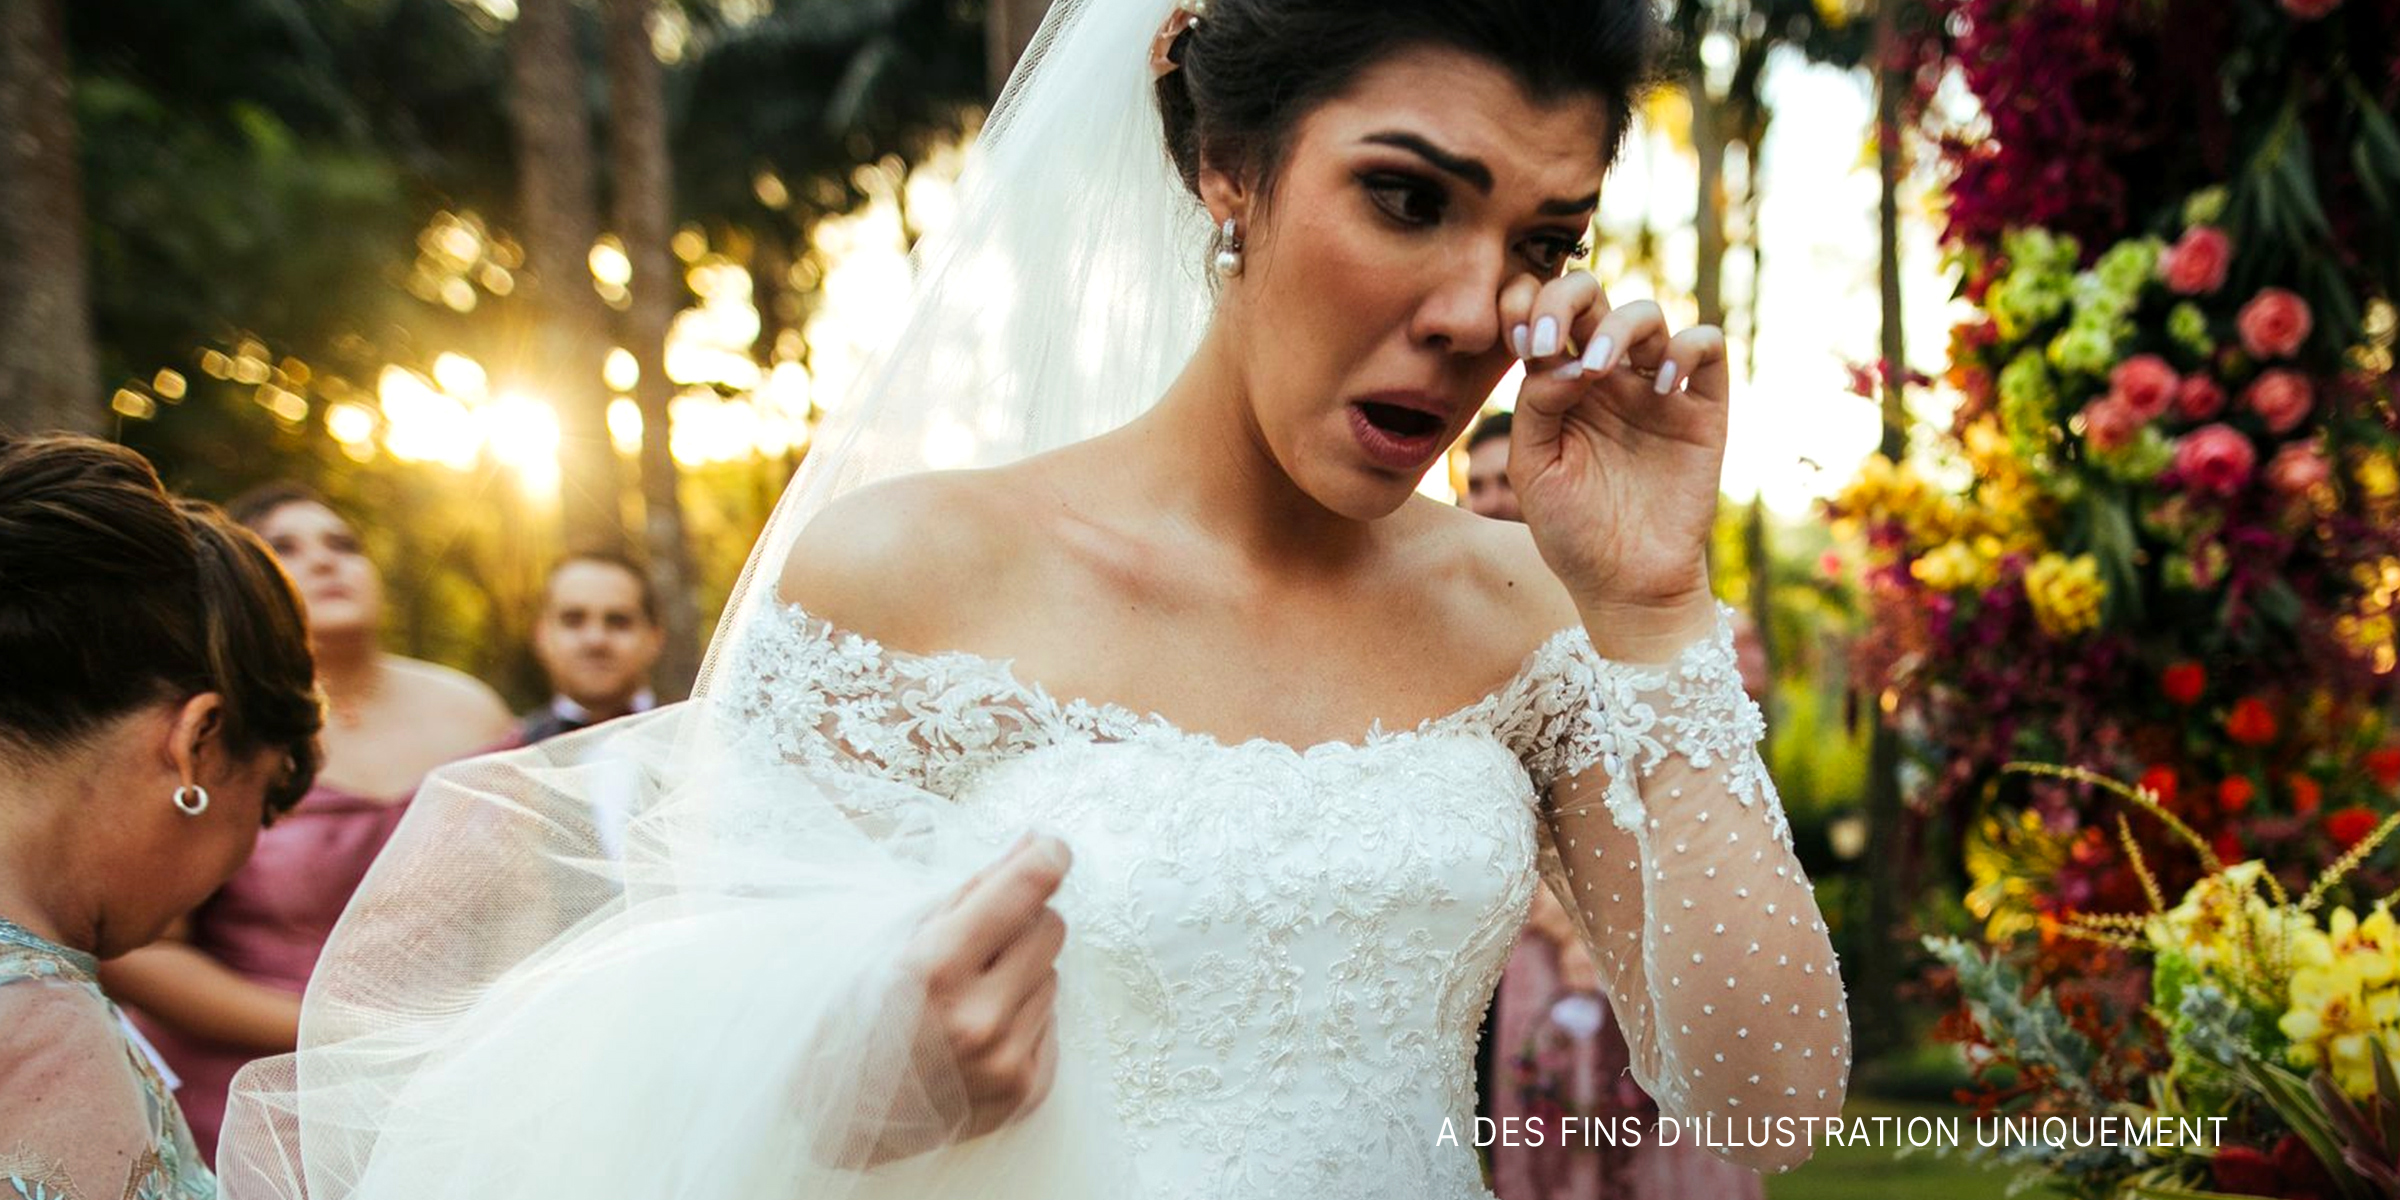 Une mariée en pleurs devant l'autel | Source : Getty Images